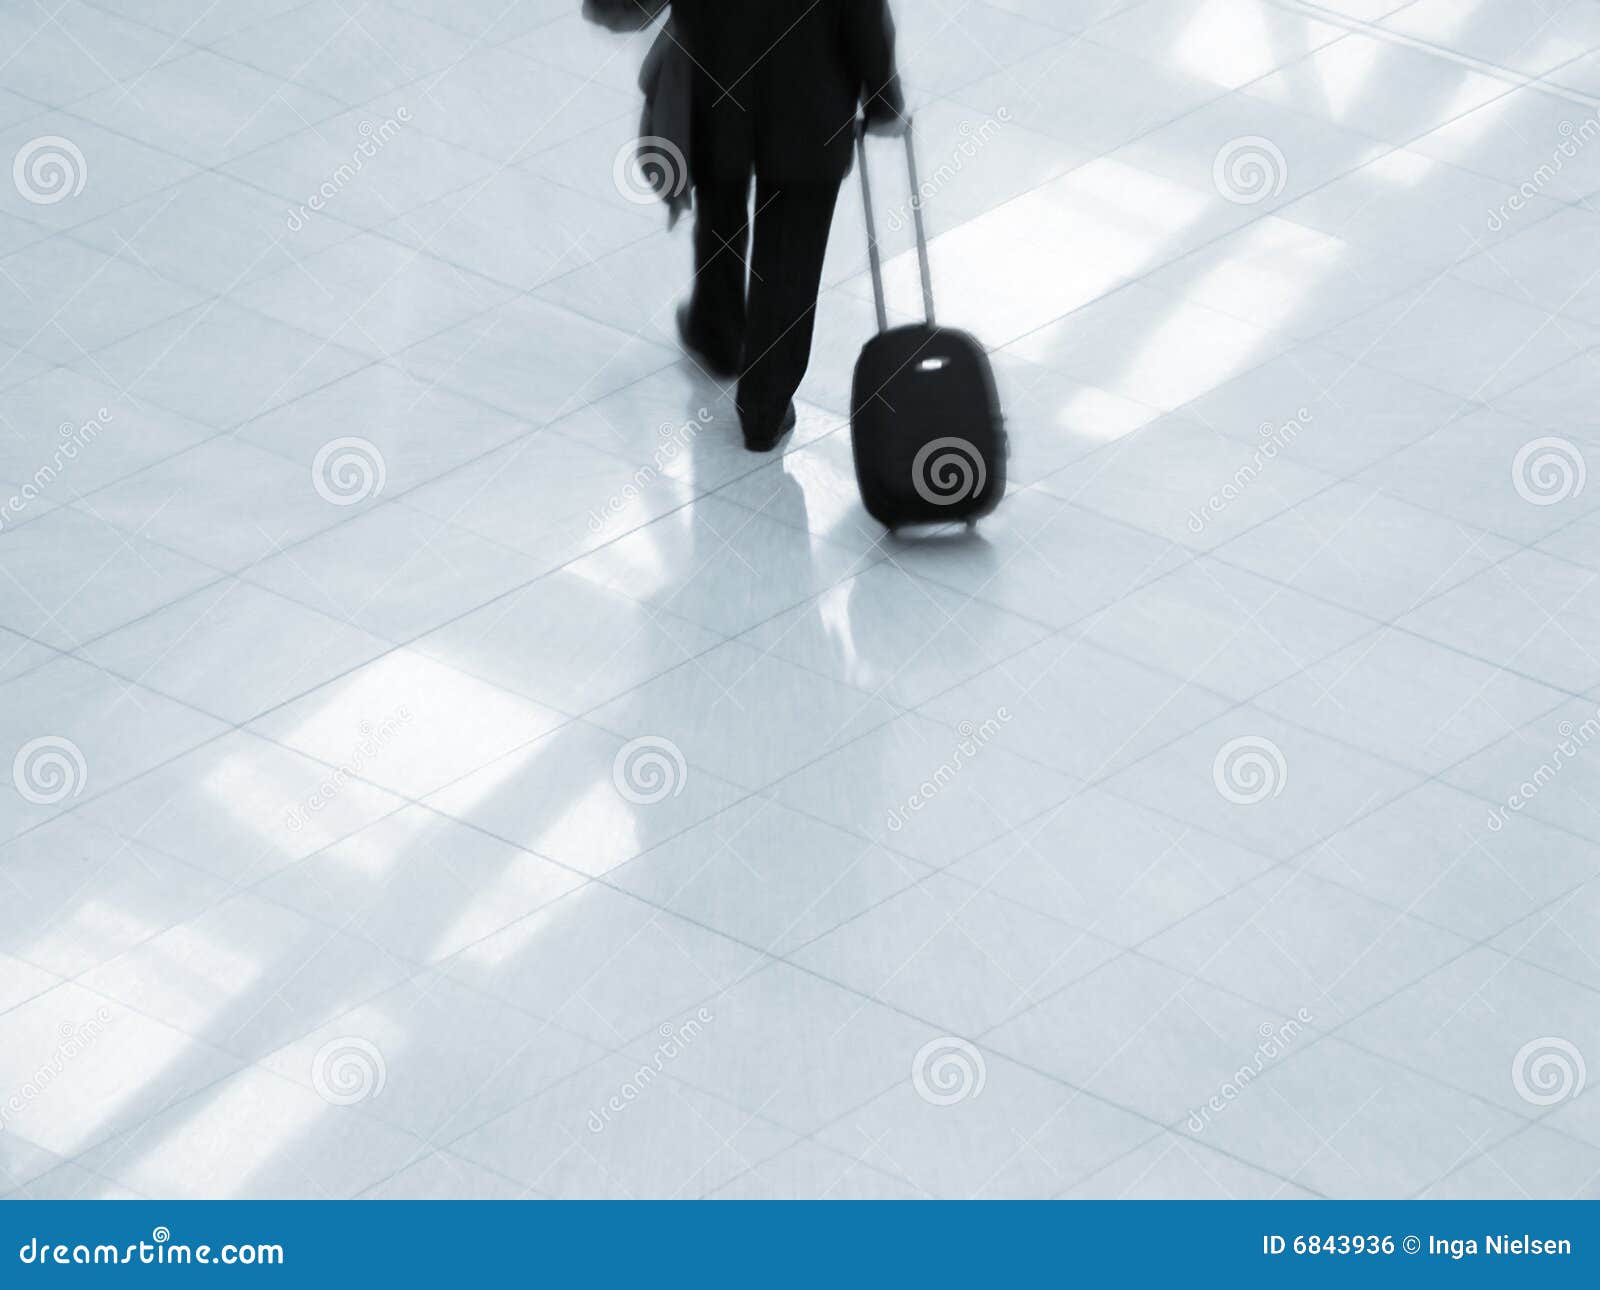 traveler at airport